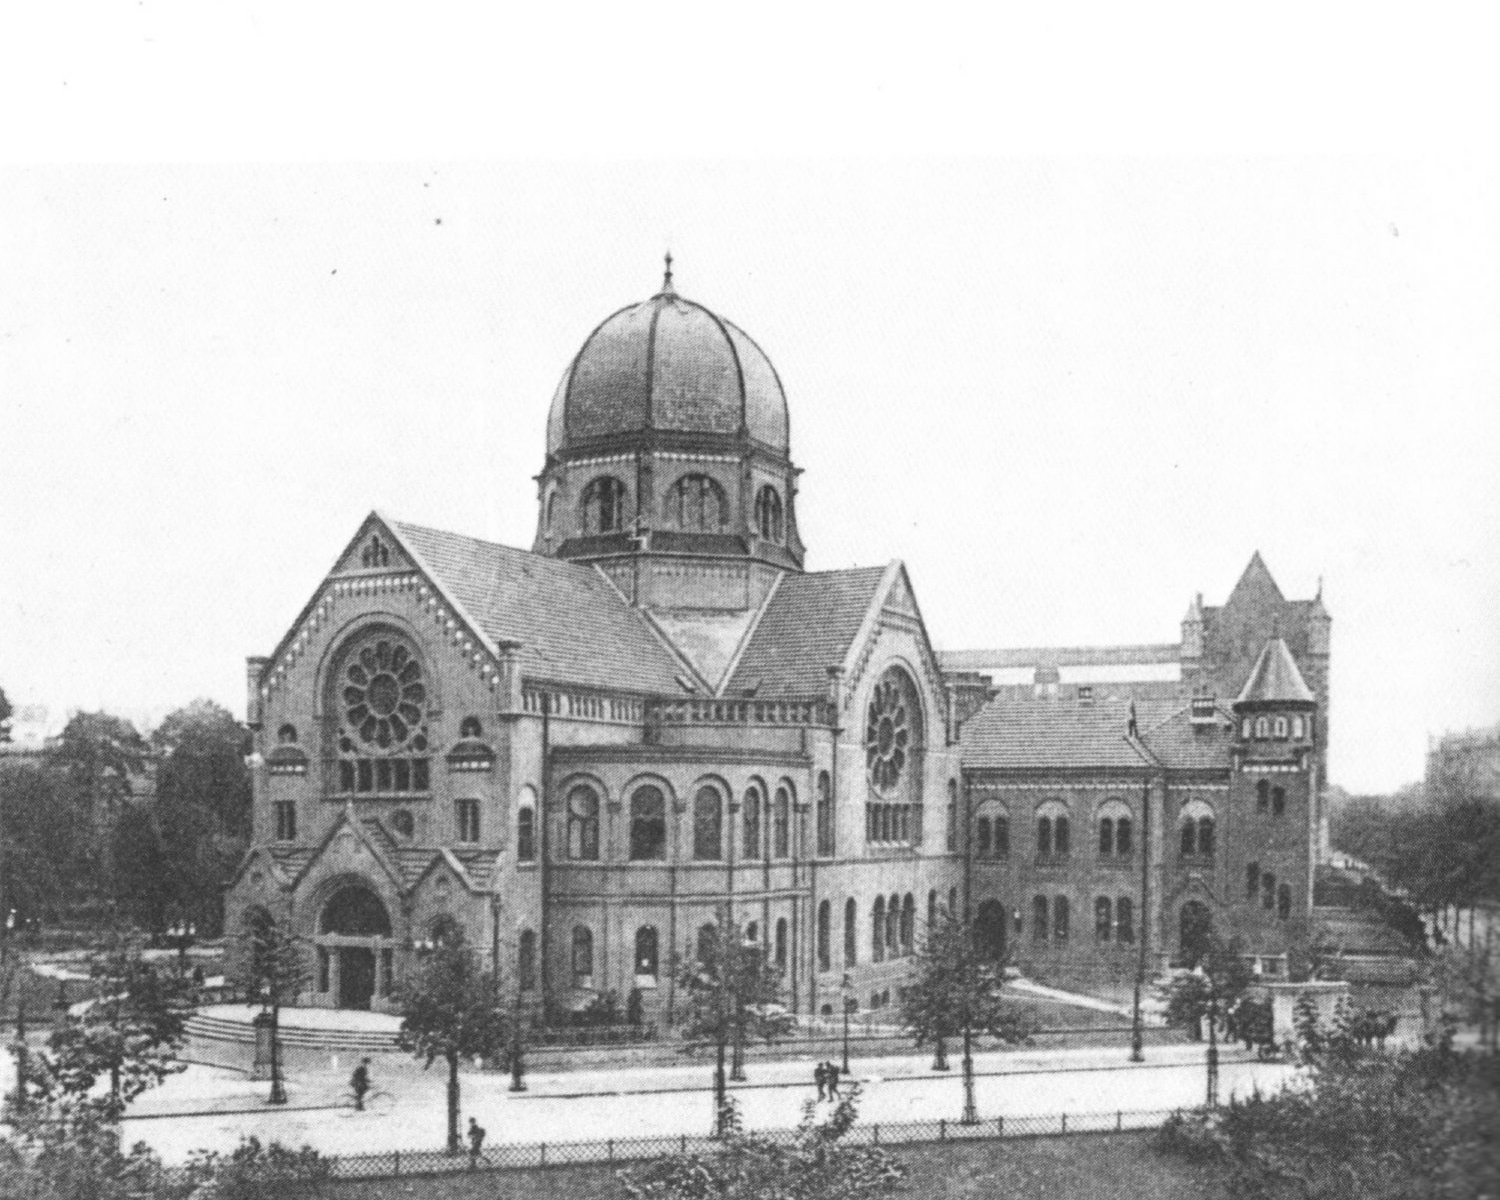 schwarz-weiß Foto einer Synagoge mit Kuppeldach in der Mitte und großen runden Fenstern an zwei Giebeln.